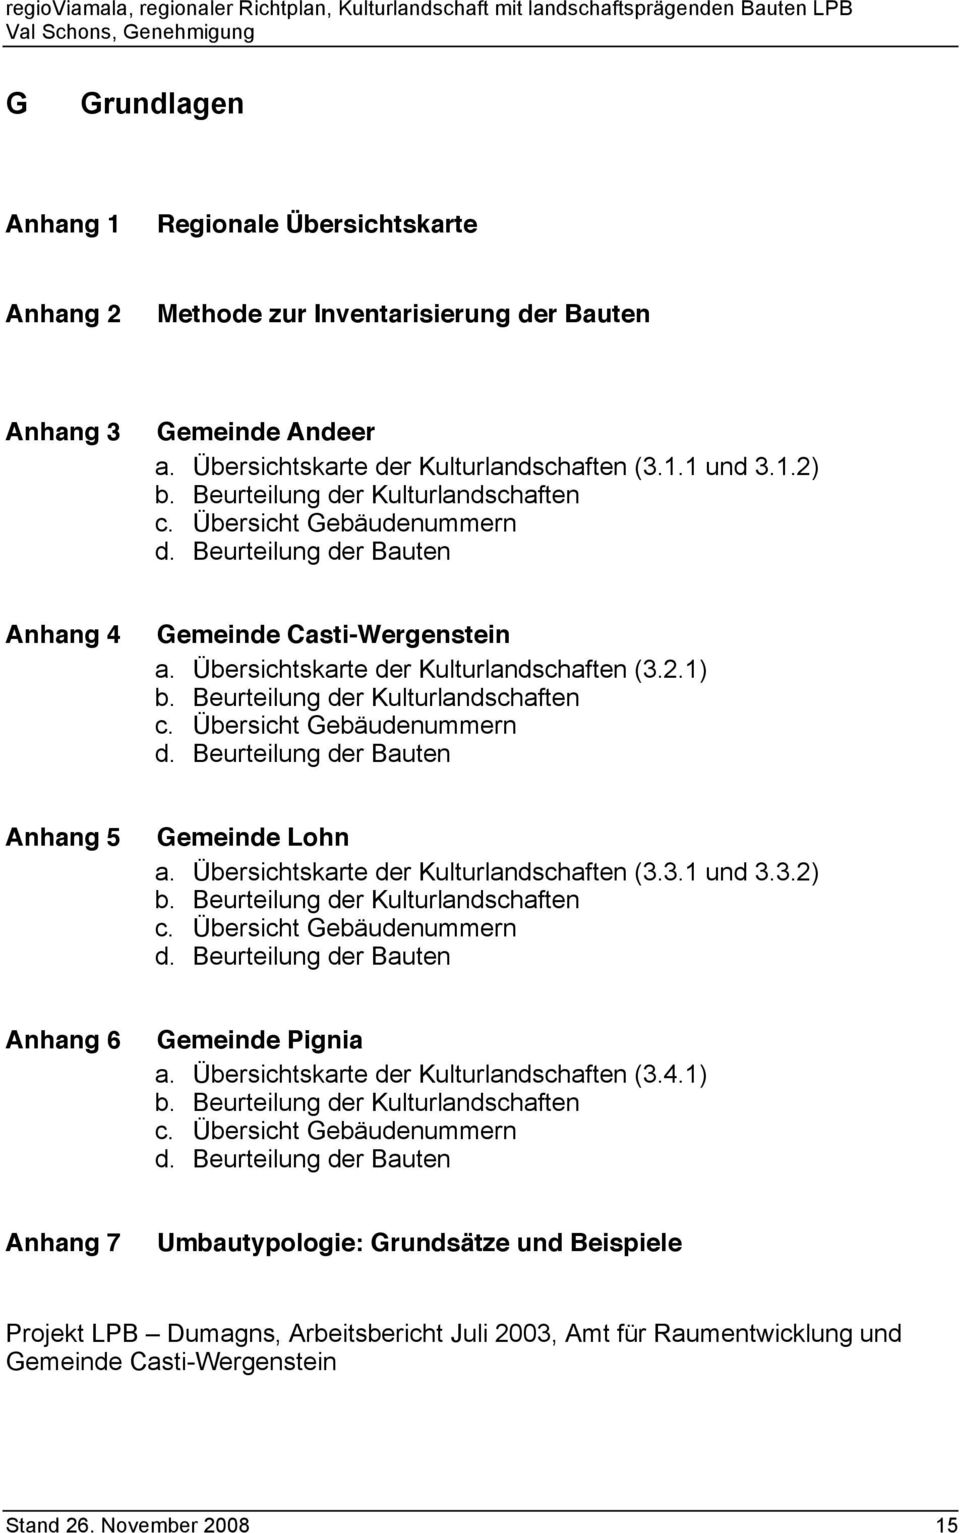 Beurteilung der Kulturlandschaften c. Übersicht Gebäudenummern d. Beurteilung der Bauten Anhang 5 Gemeinde Lohn a. Übersichtskarte der Kulturlandschaften (3.3.1 und 3.3.2) b.